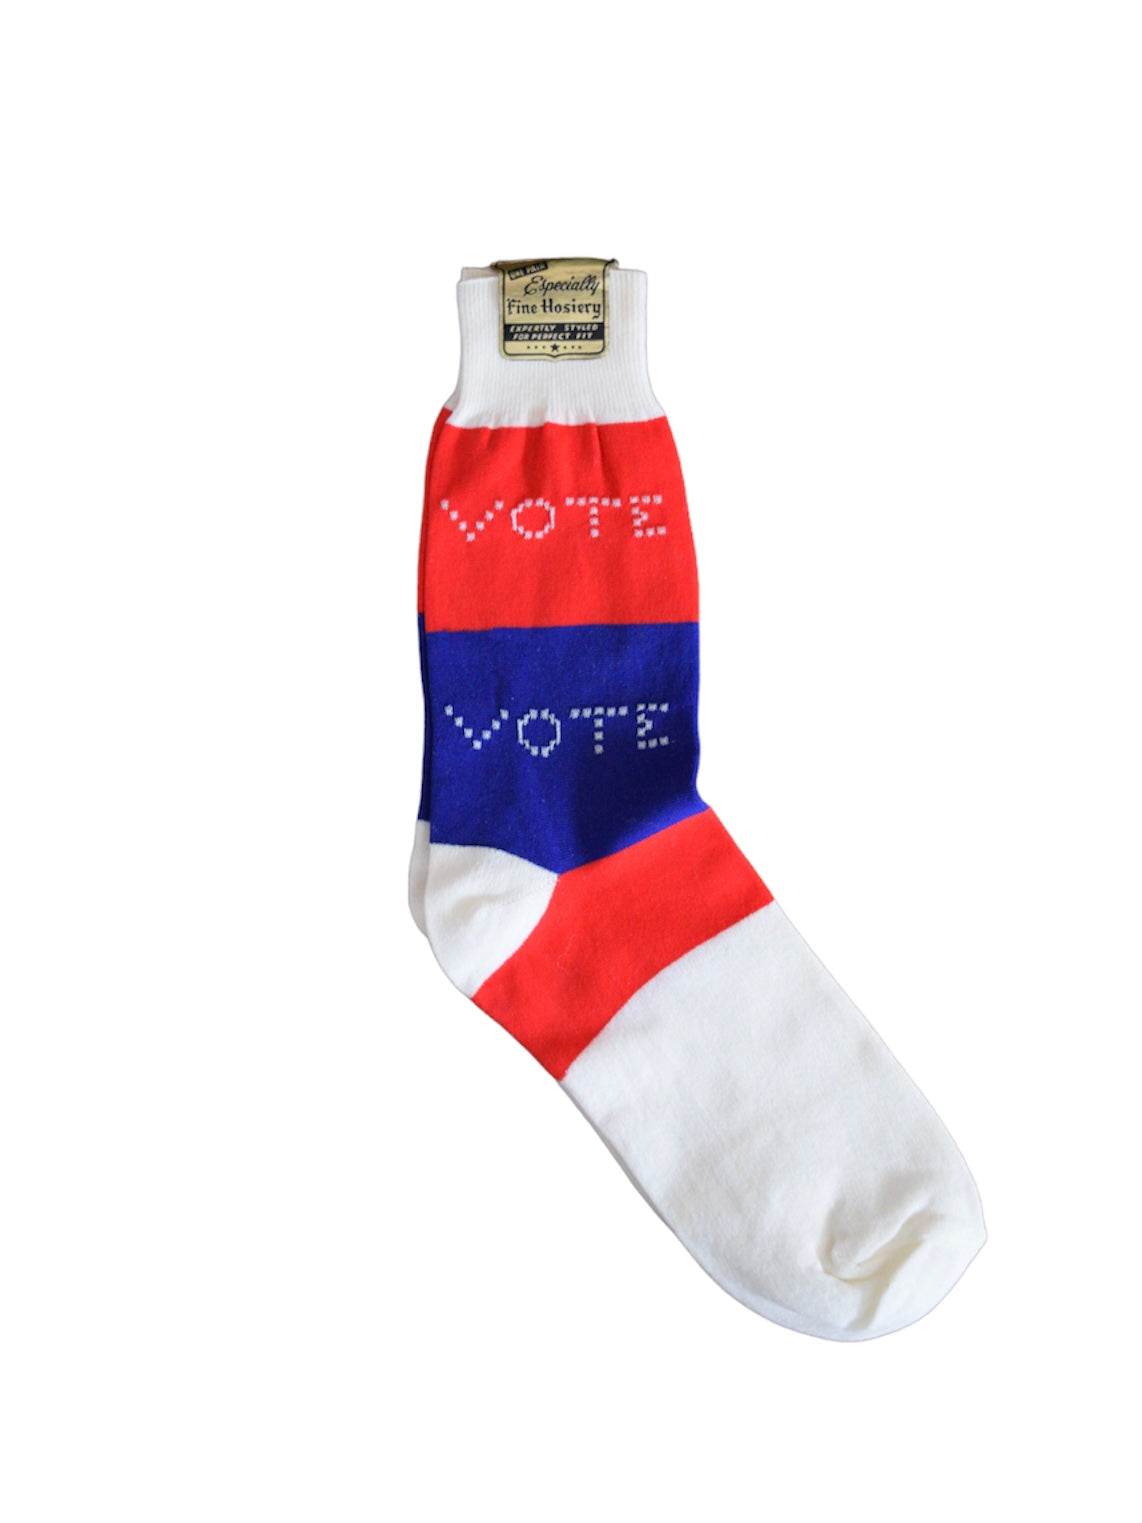 1970's Deadstock "Vote" Socks